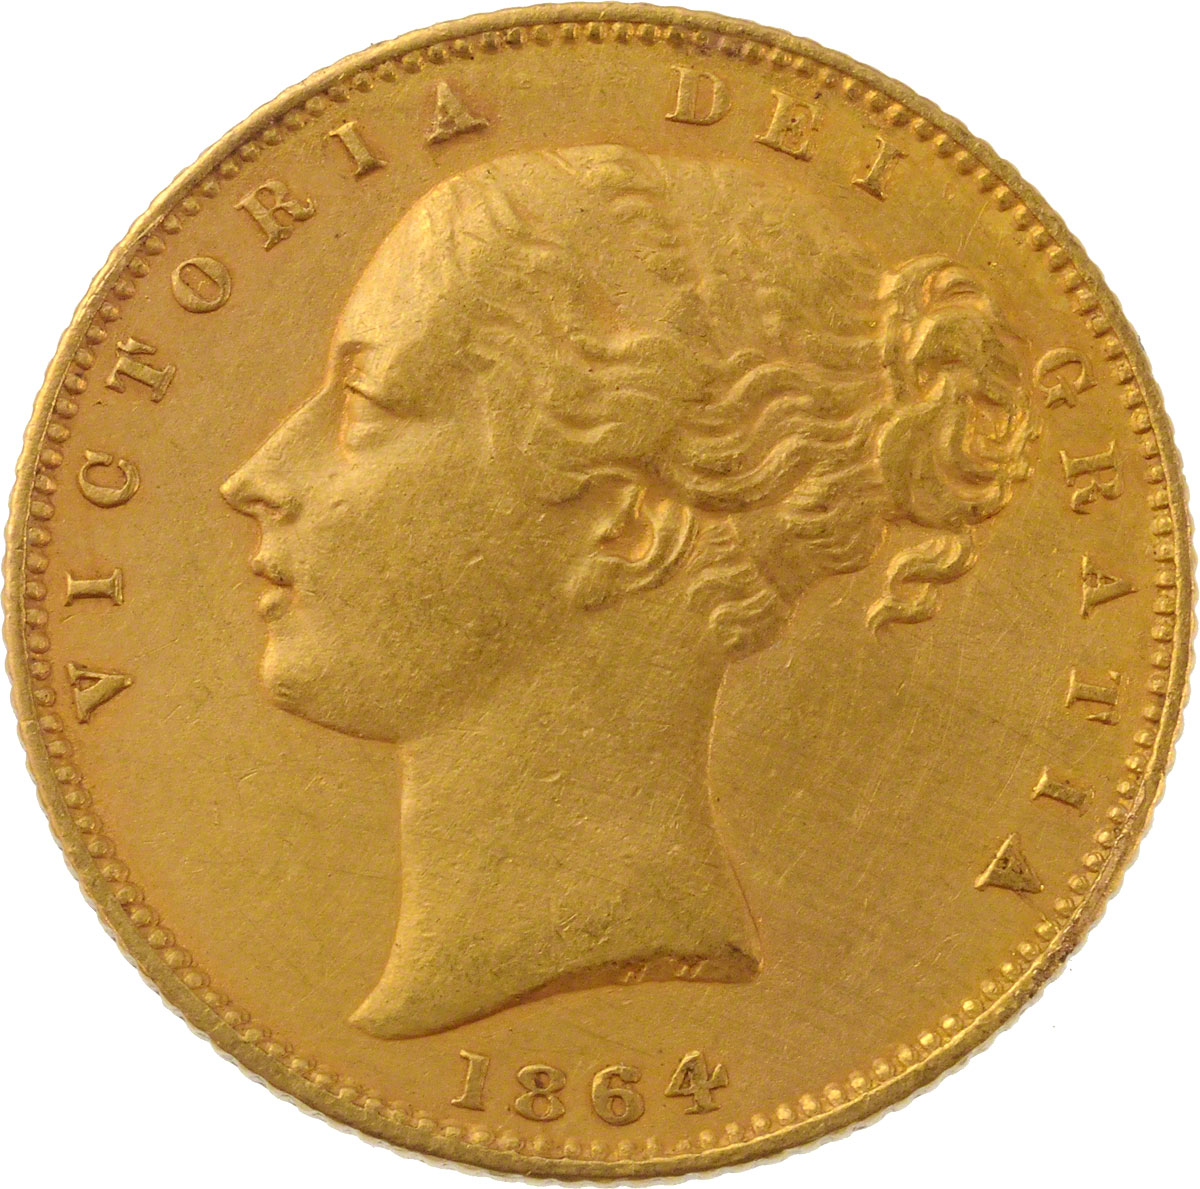 1864 Βικτώρια (Νομισματοκοπείο Λονδίνου)